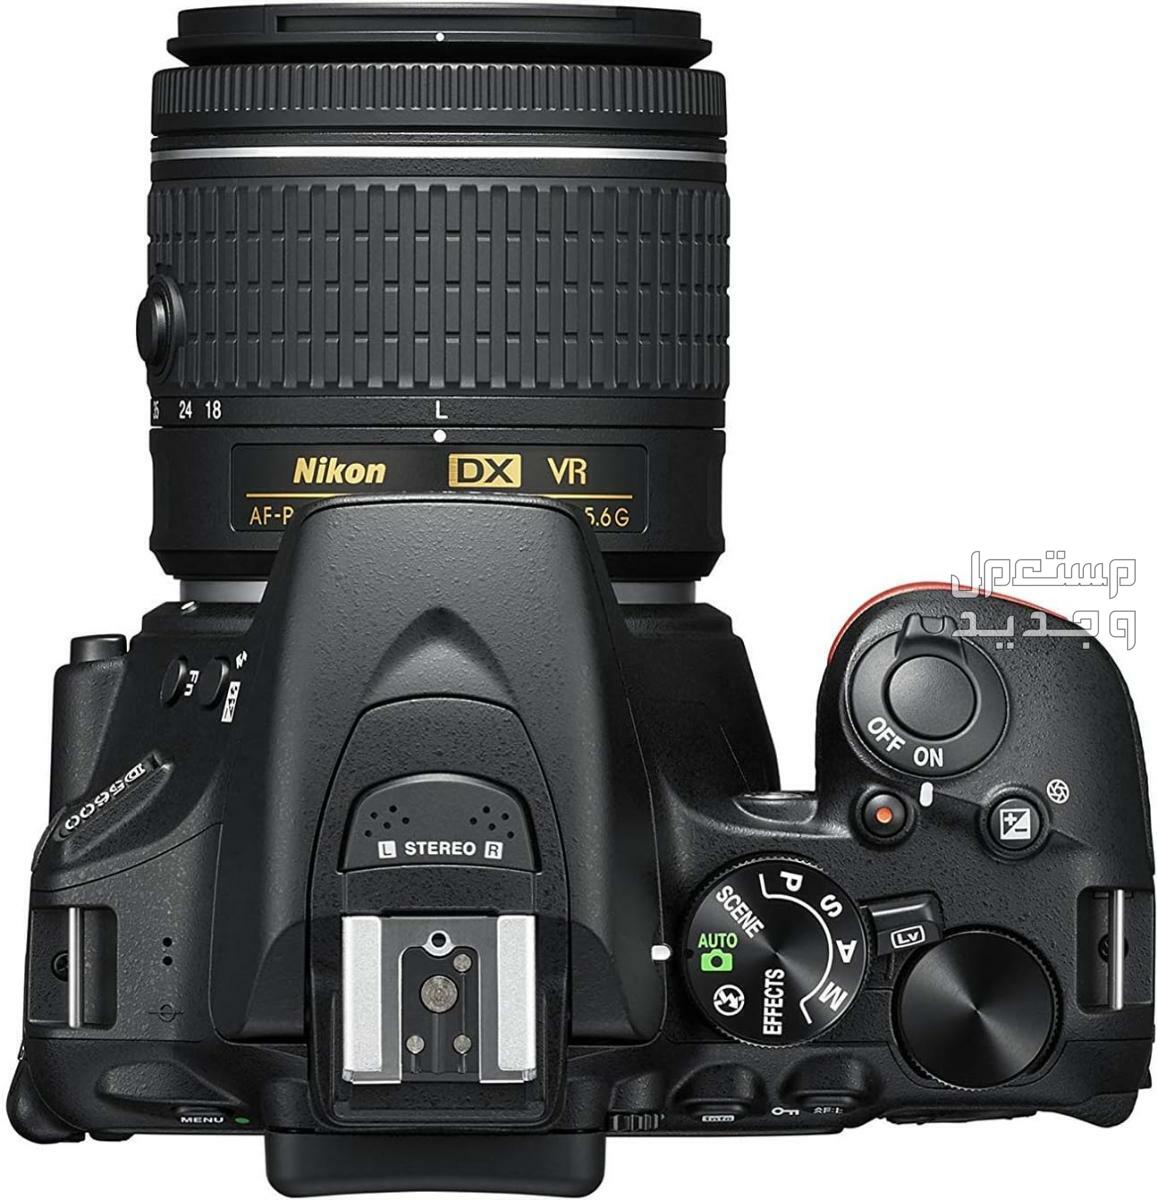 10 كاميرات تصوير ماركات عالمية بأسعار رخيصة في الجزائر مميزات كاميرا Nikon D5600